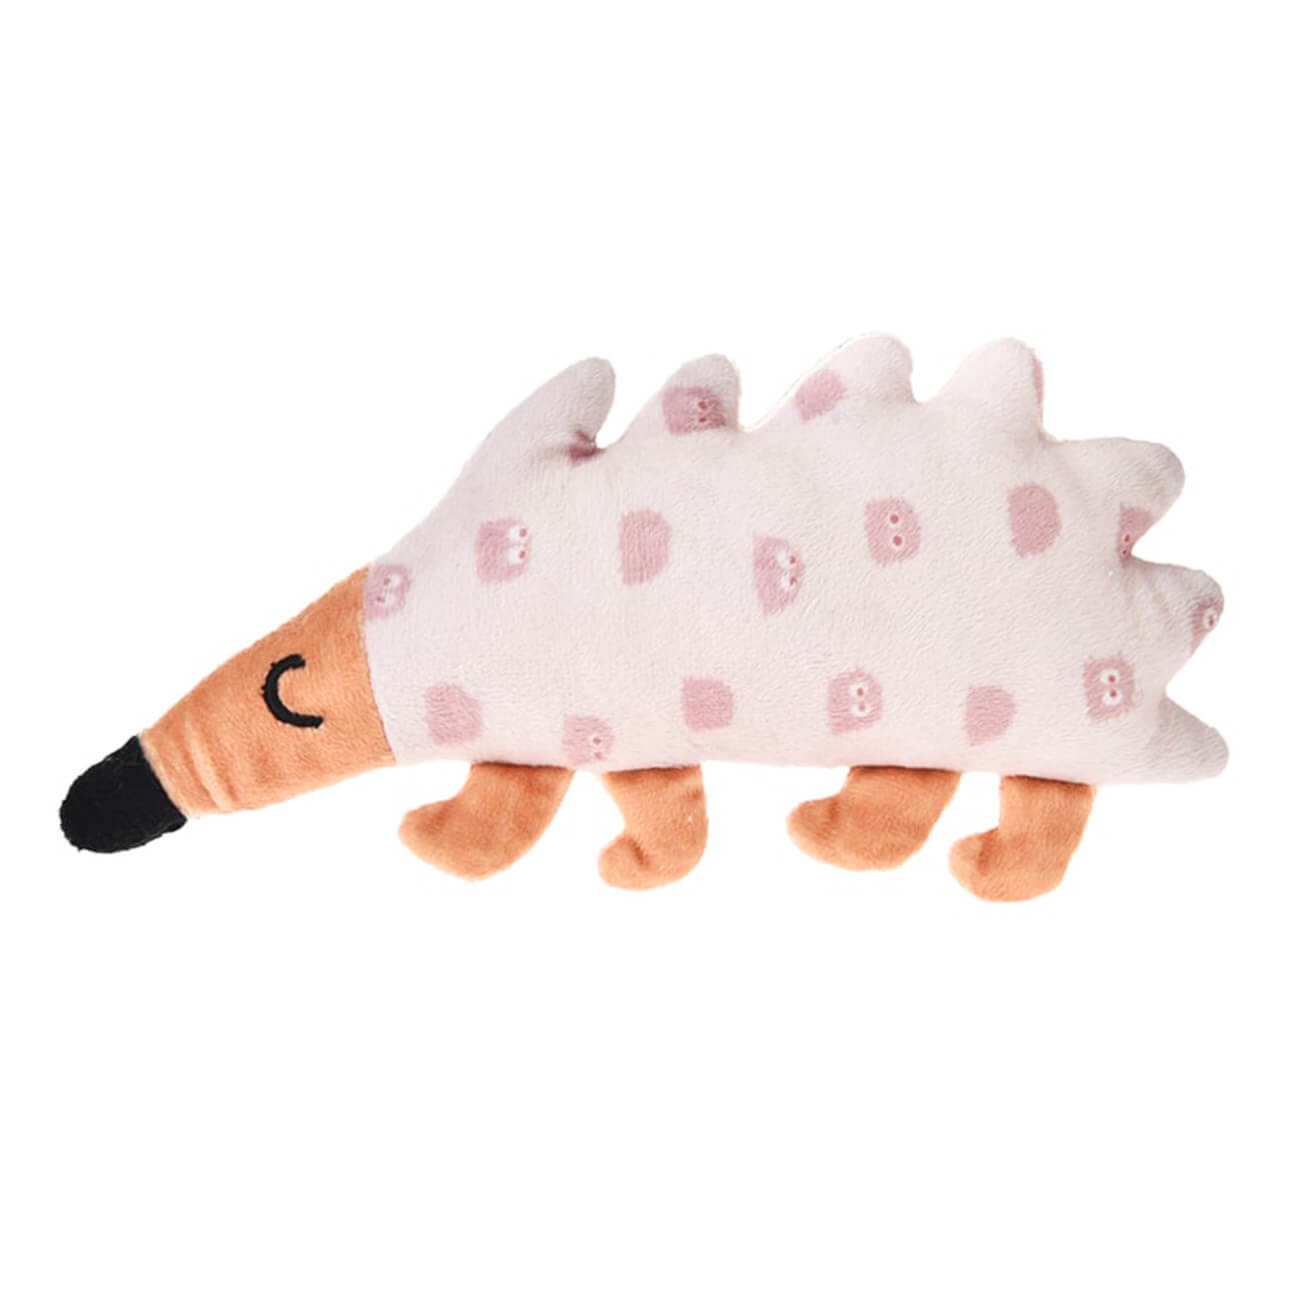 Игрушка для щенков, 20х10 см, полиэстер, розовая, Ежик, Small pet музыкальная игрушка любимый друг звук свет розовая собачка